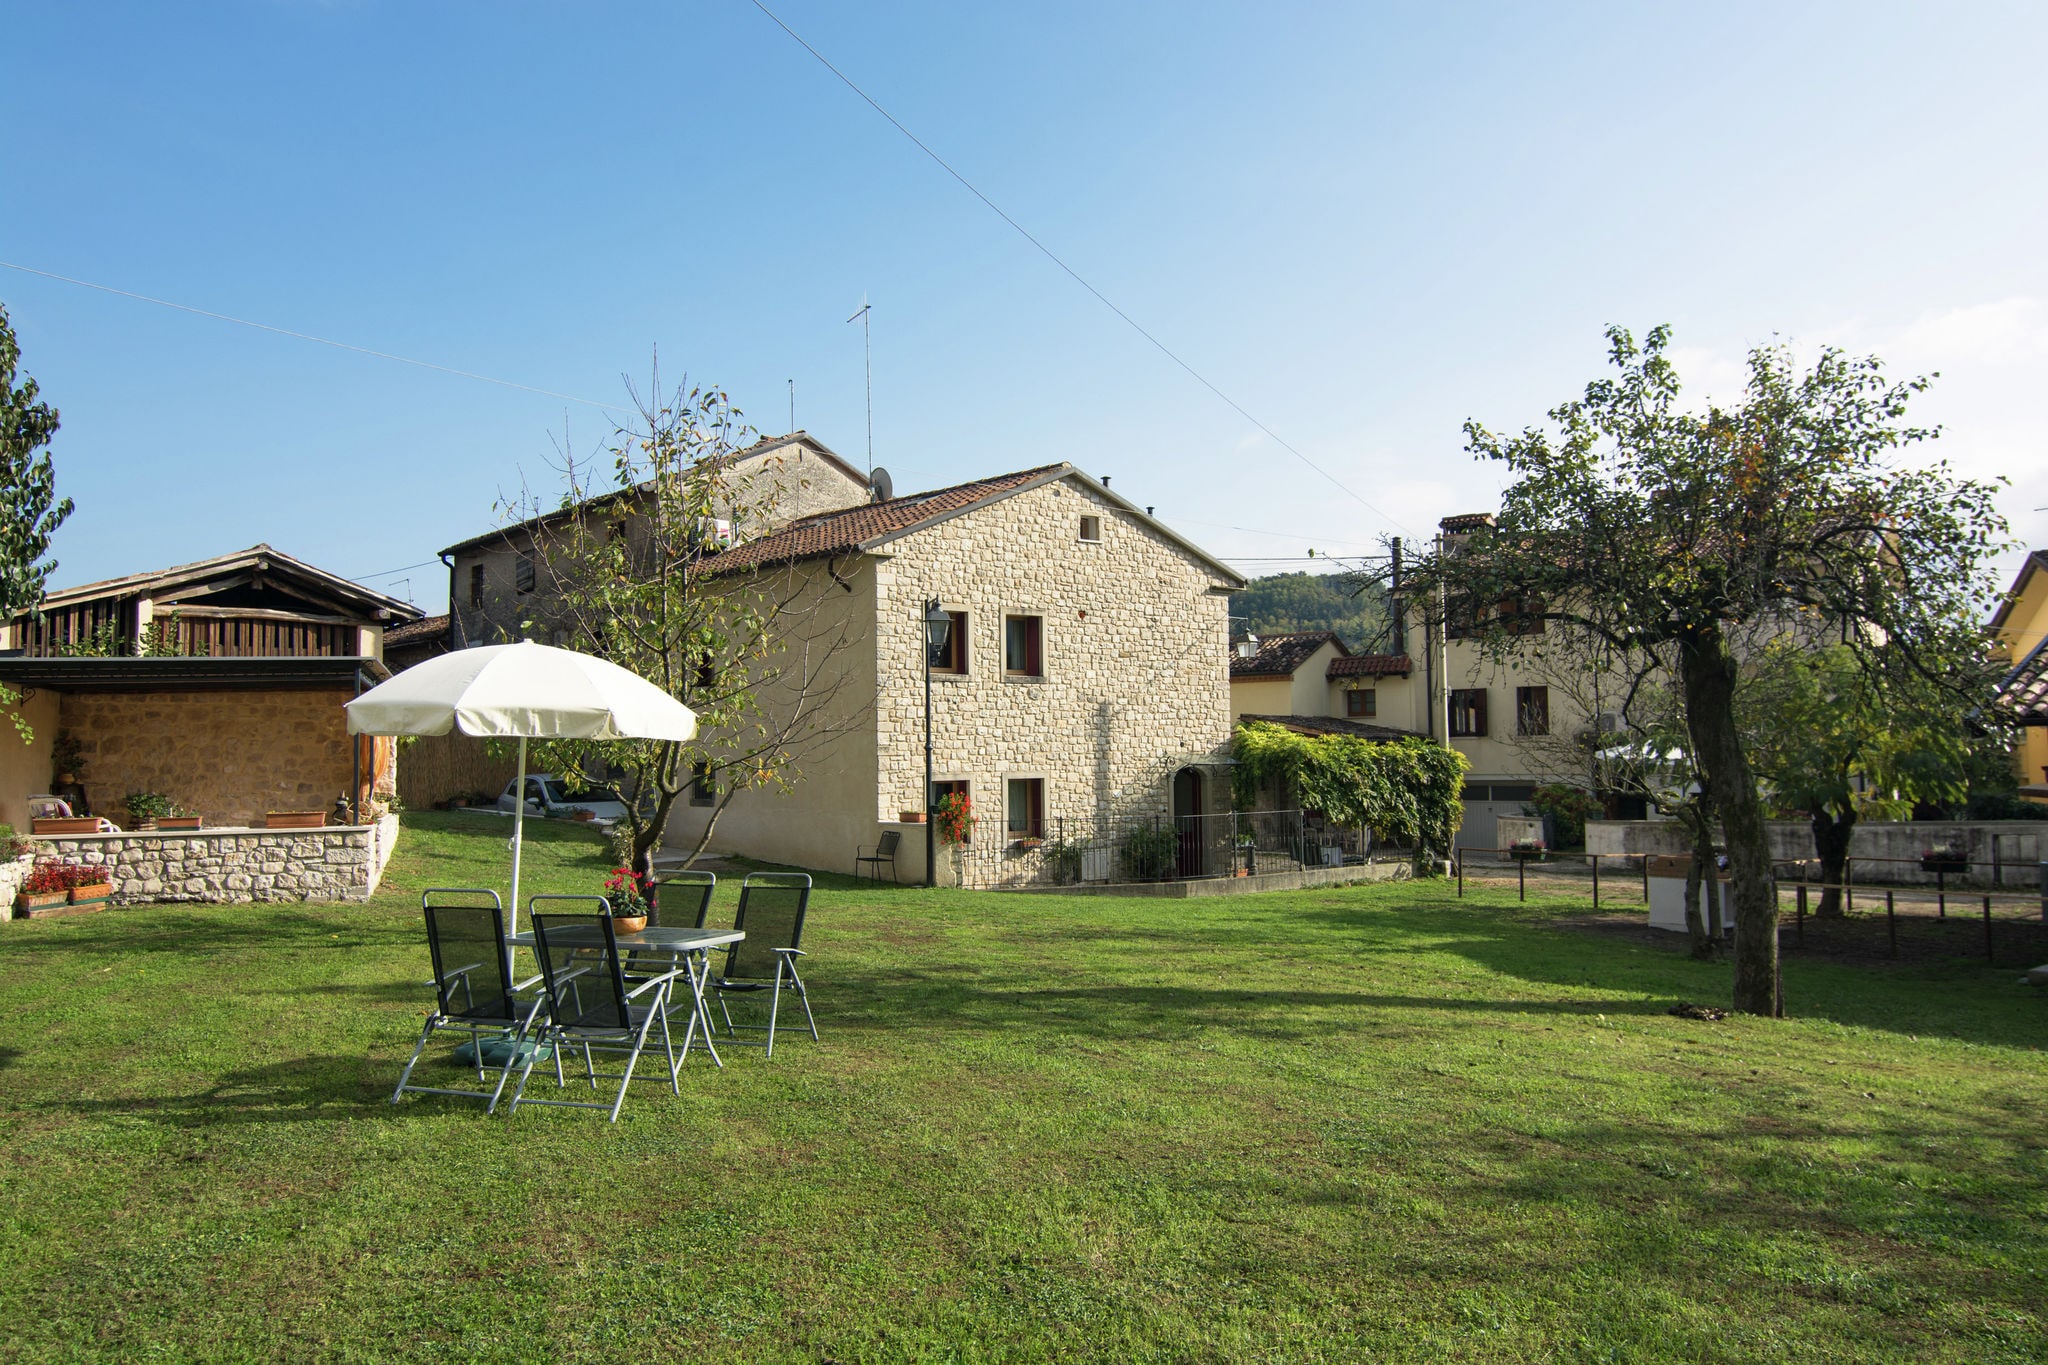 Mooi vakantiehuis in Veneto, in de provincie Treviso.